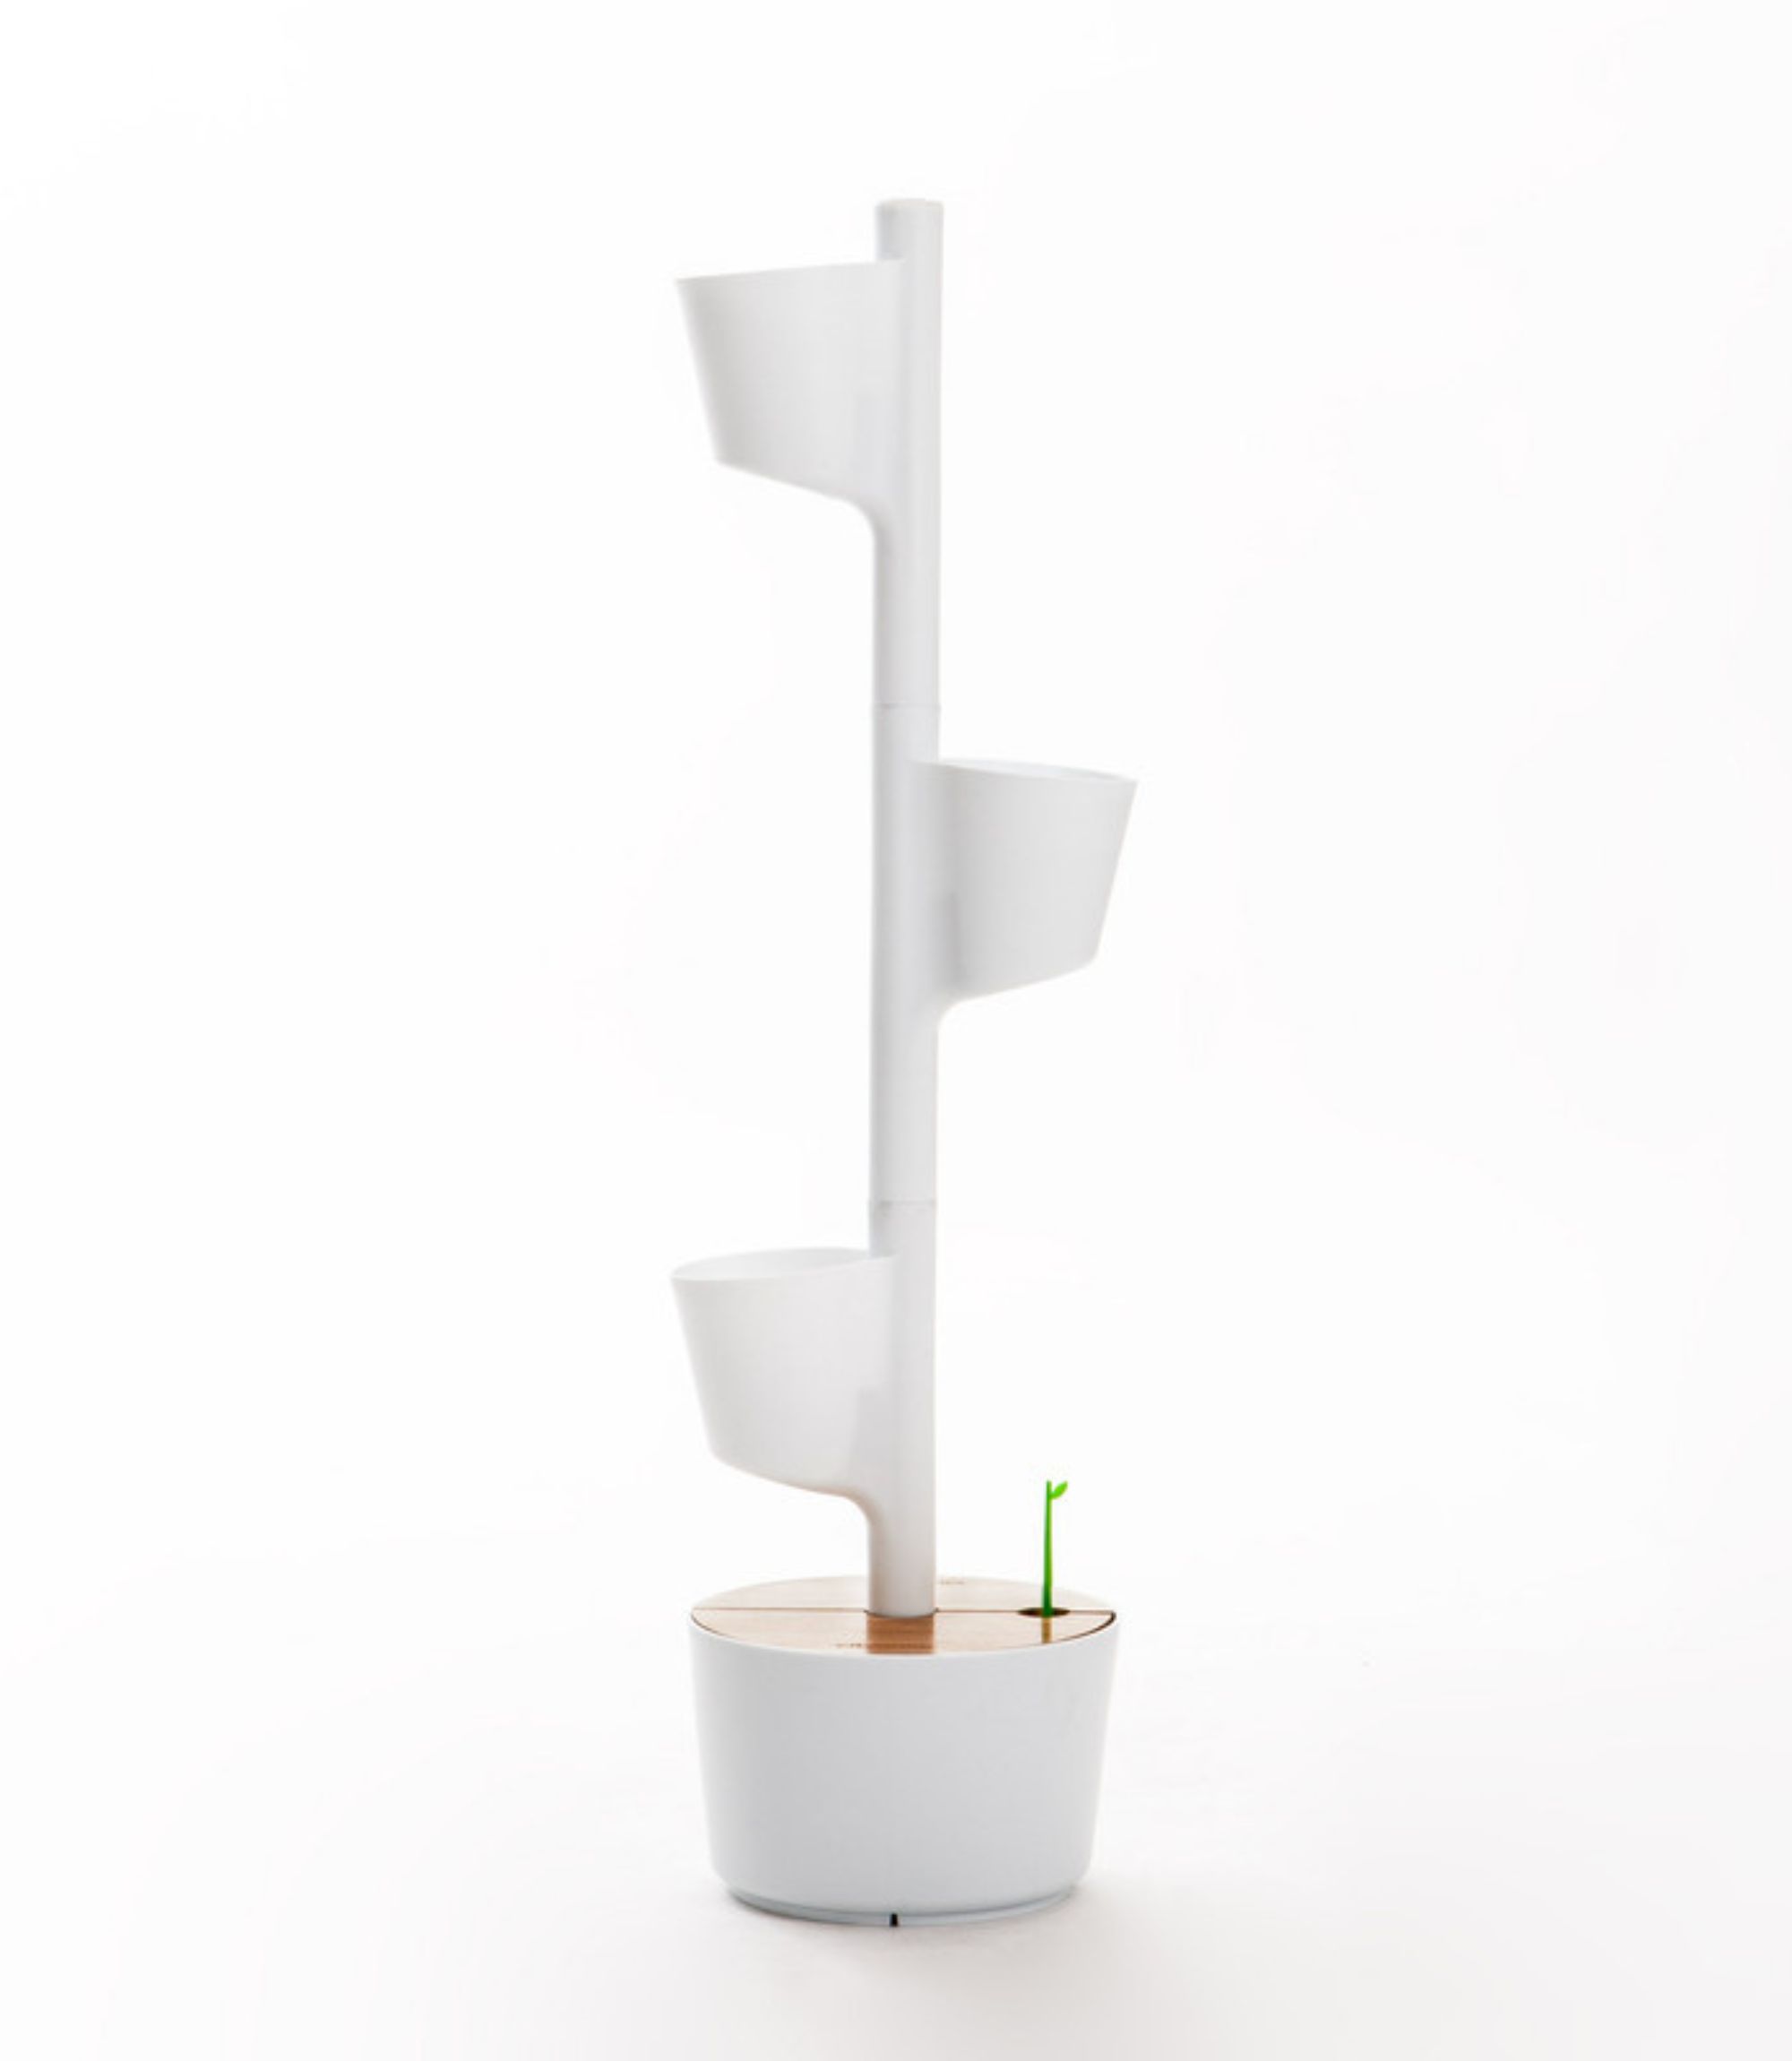 Design Award: Pflanzensystem Kiefernholz Weiß